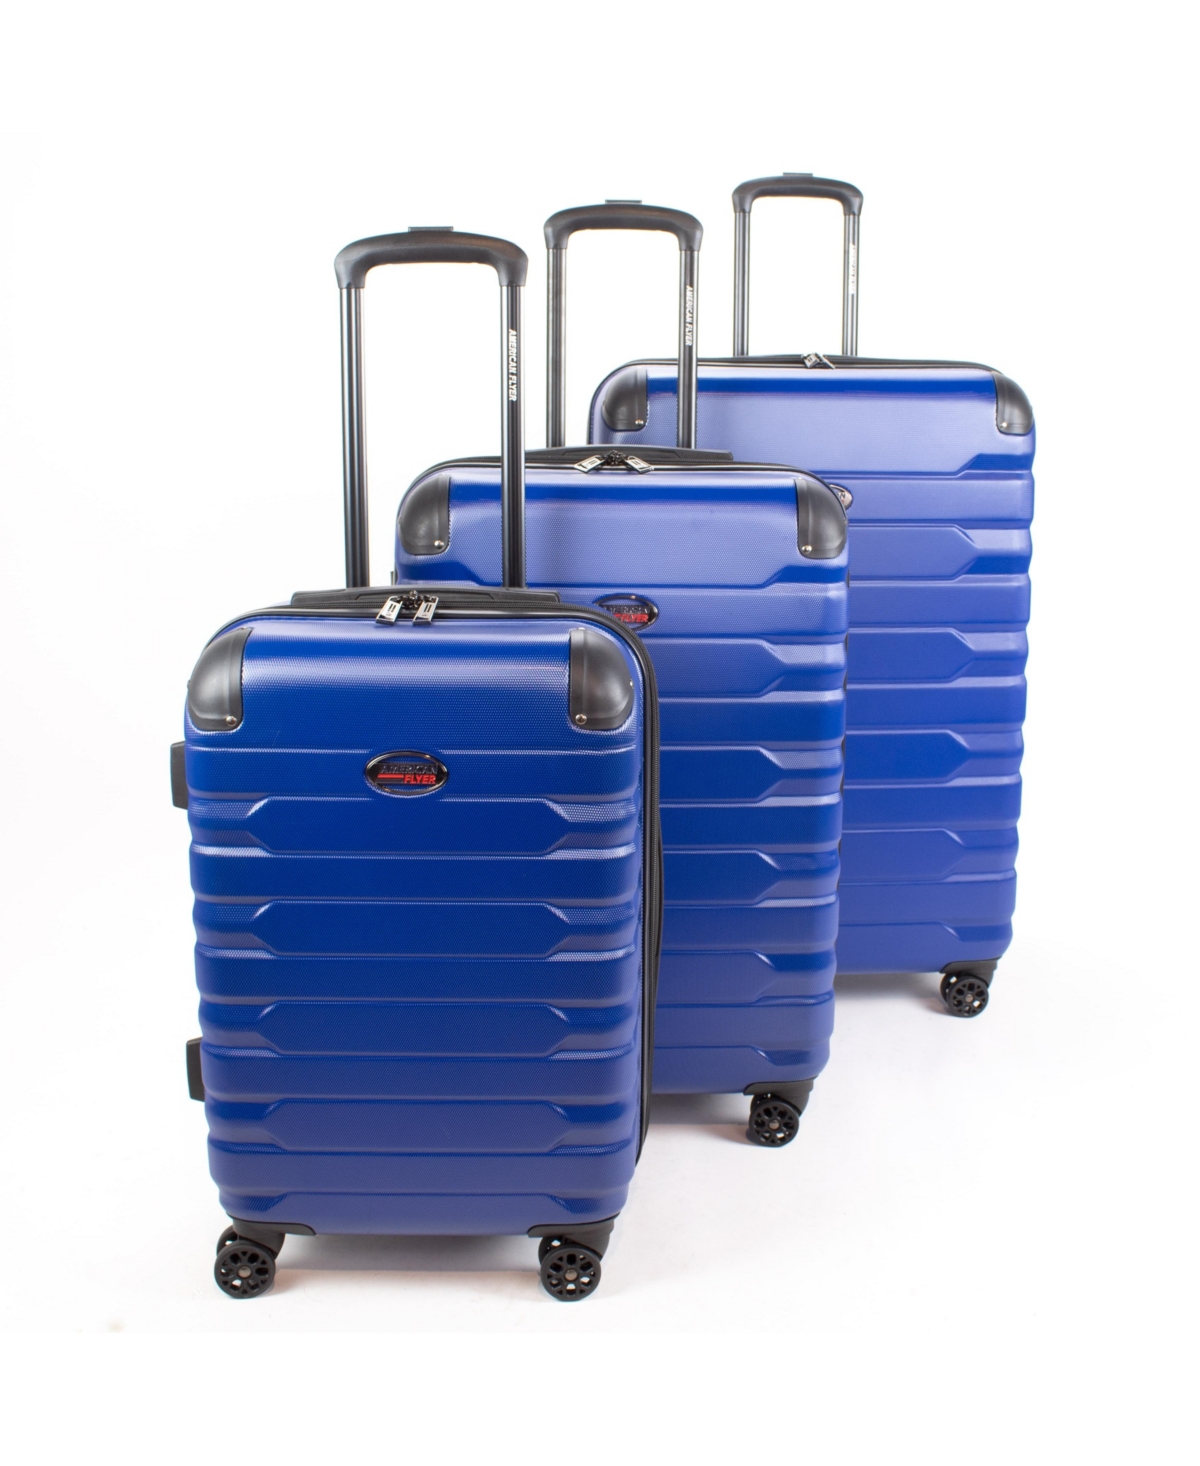 Mina 3-Piece Hardside Luggage Set - Blue